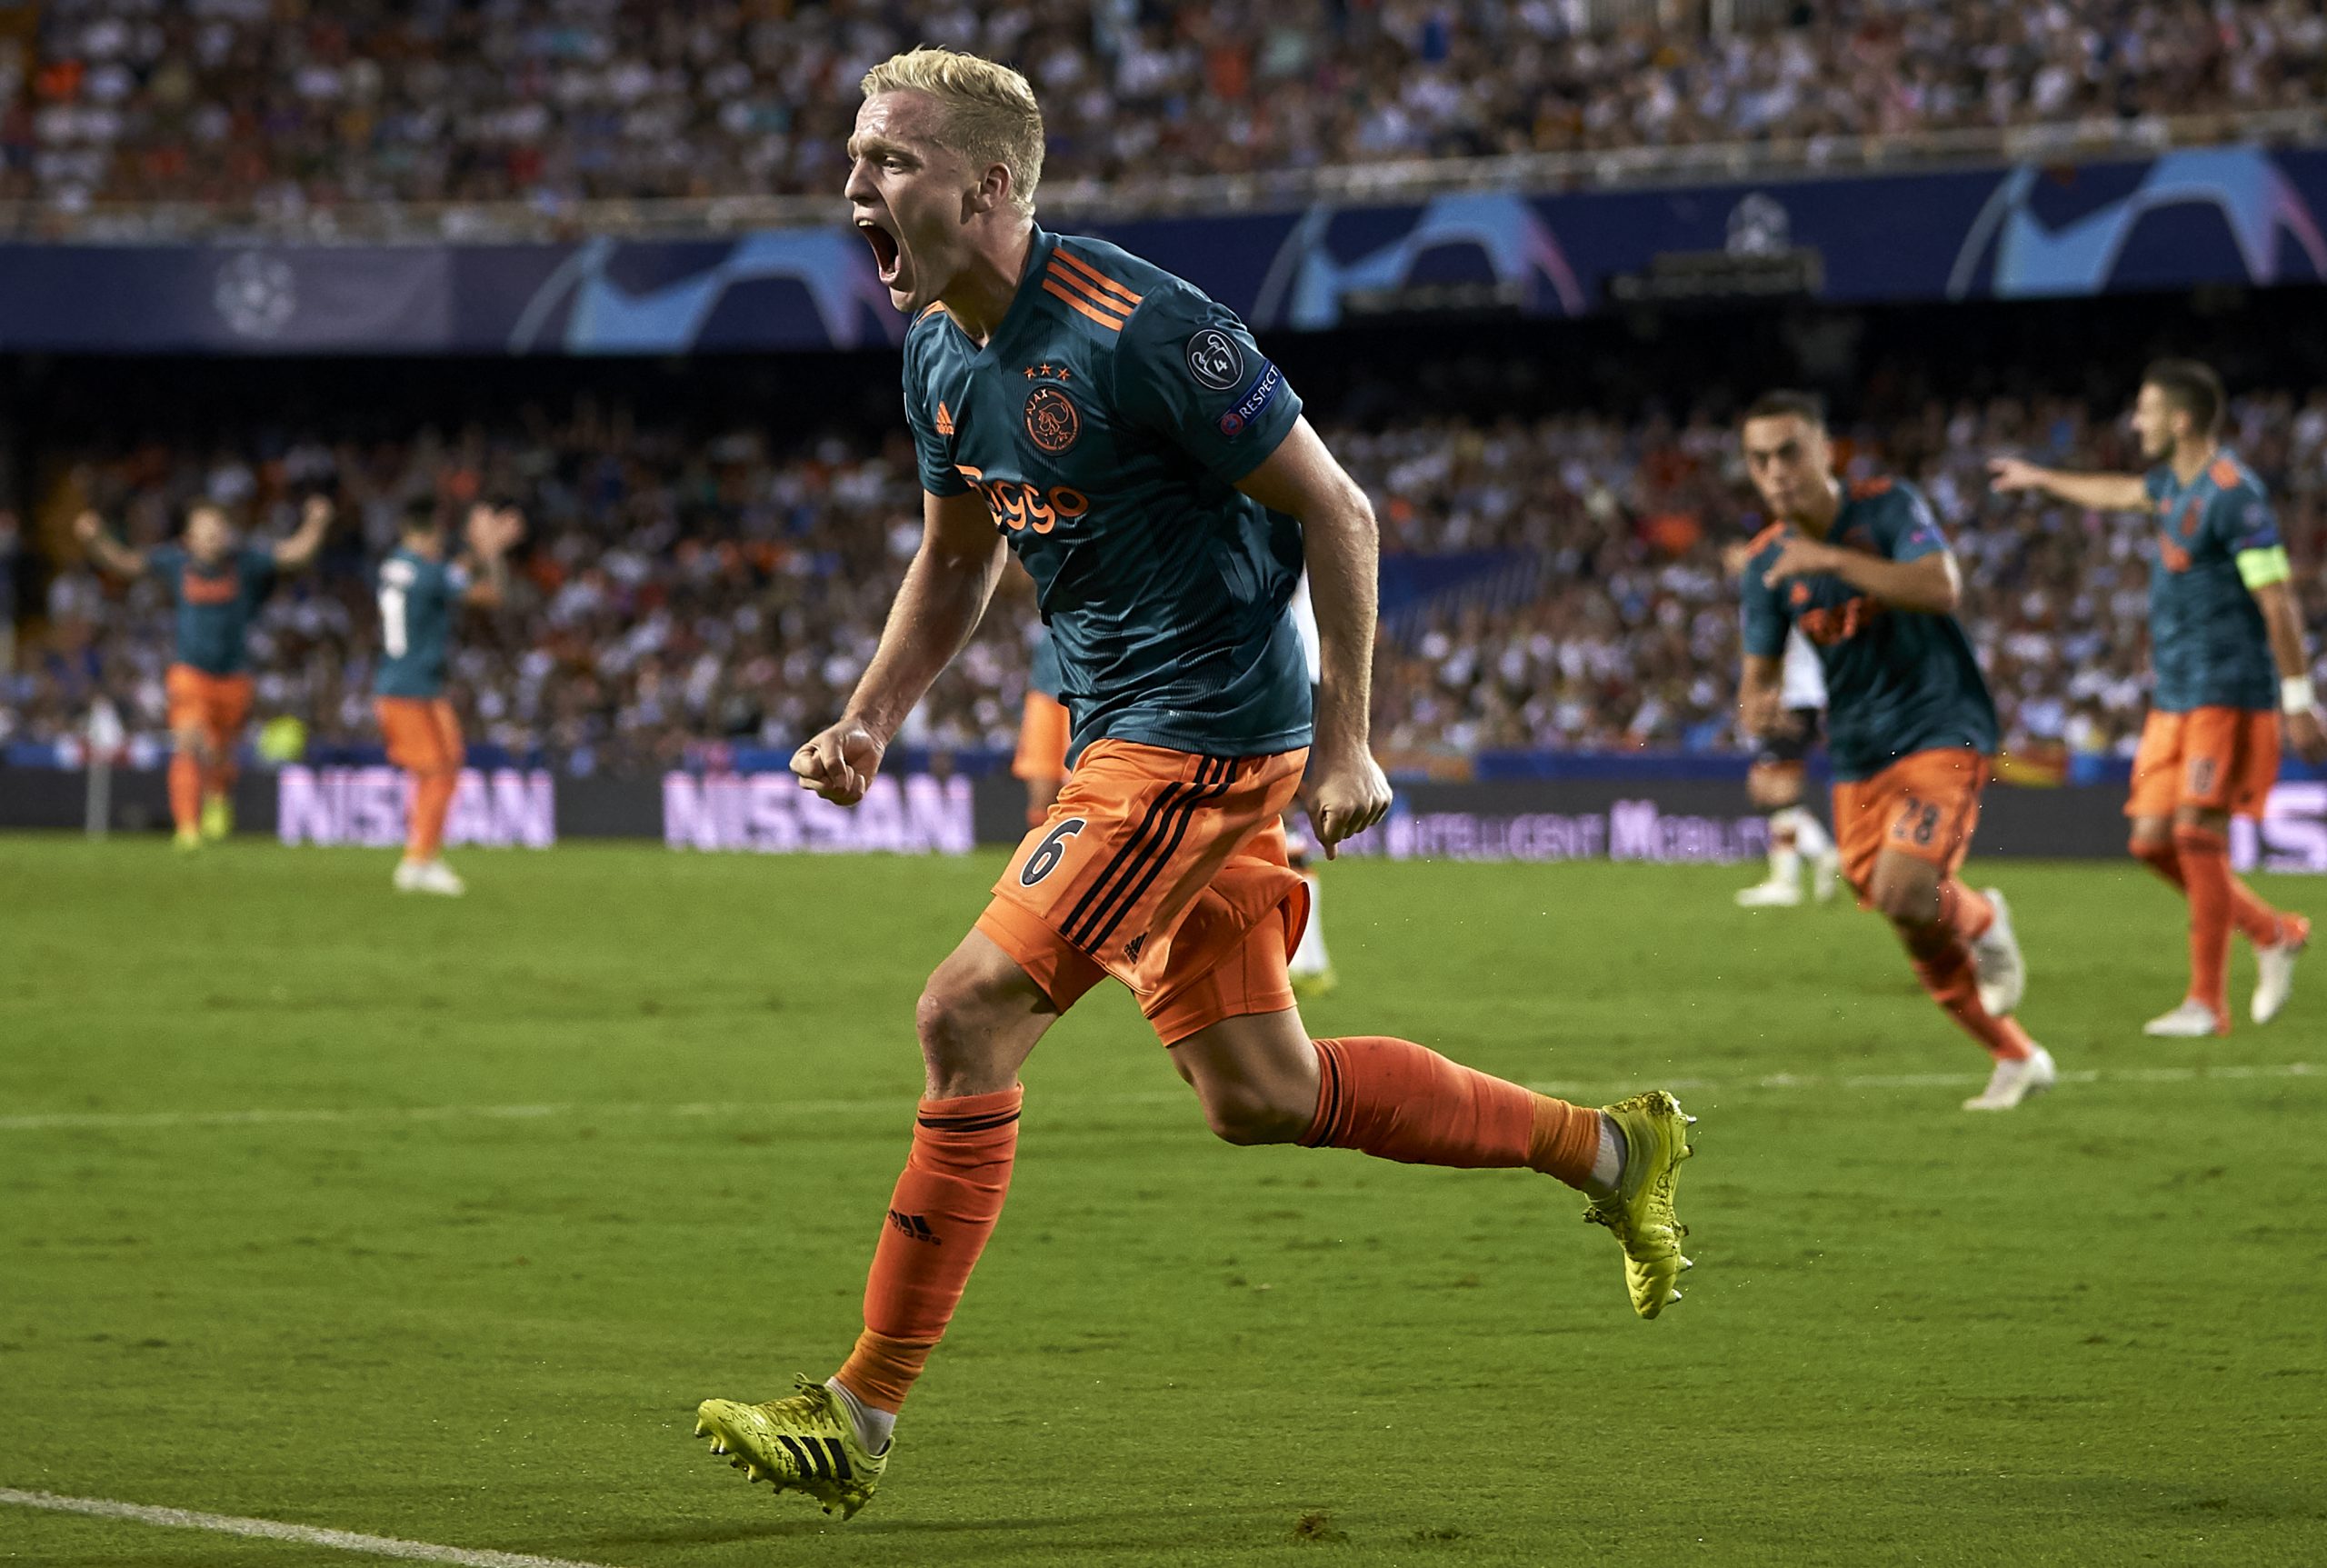 Gronkjaer Urges Donny Van De Beek To Join Chelsea - Van de Beek celebrates a goal